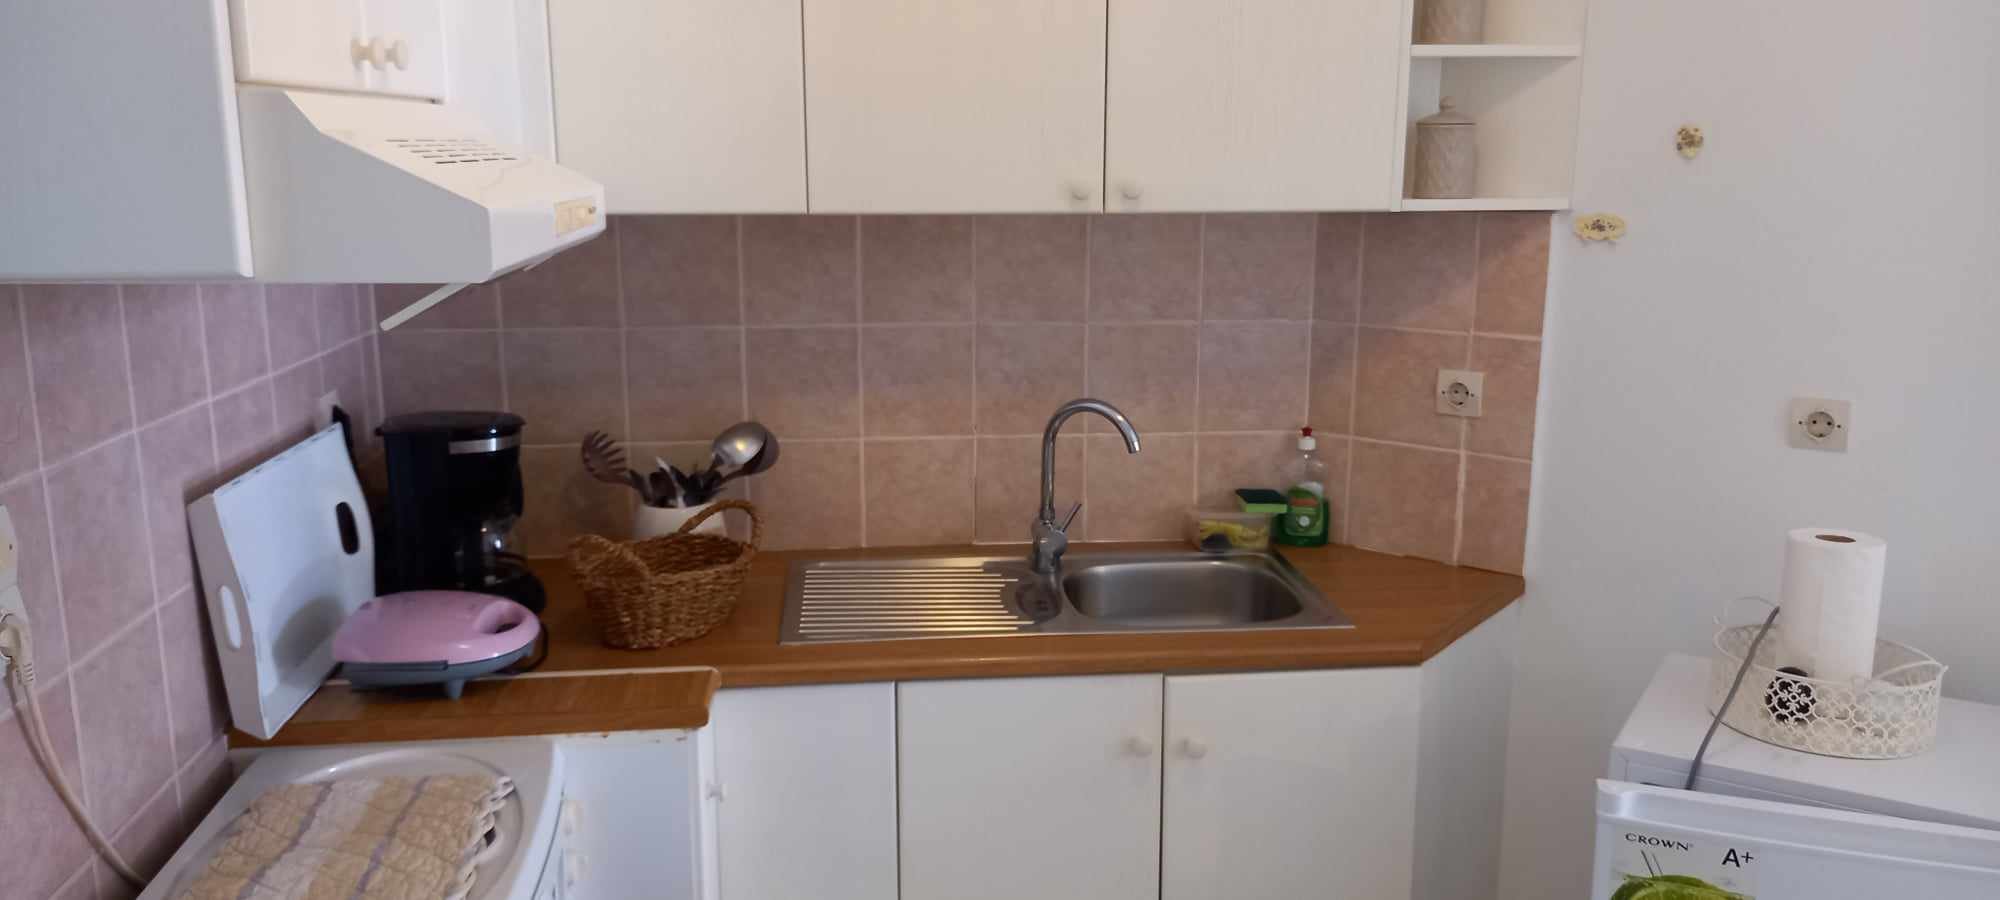 unique_spacious_modern_home_kitchen_sink.jpg